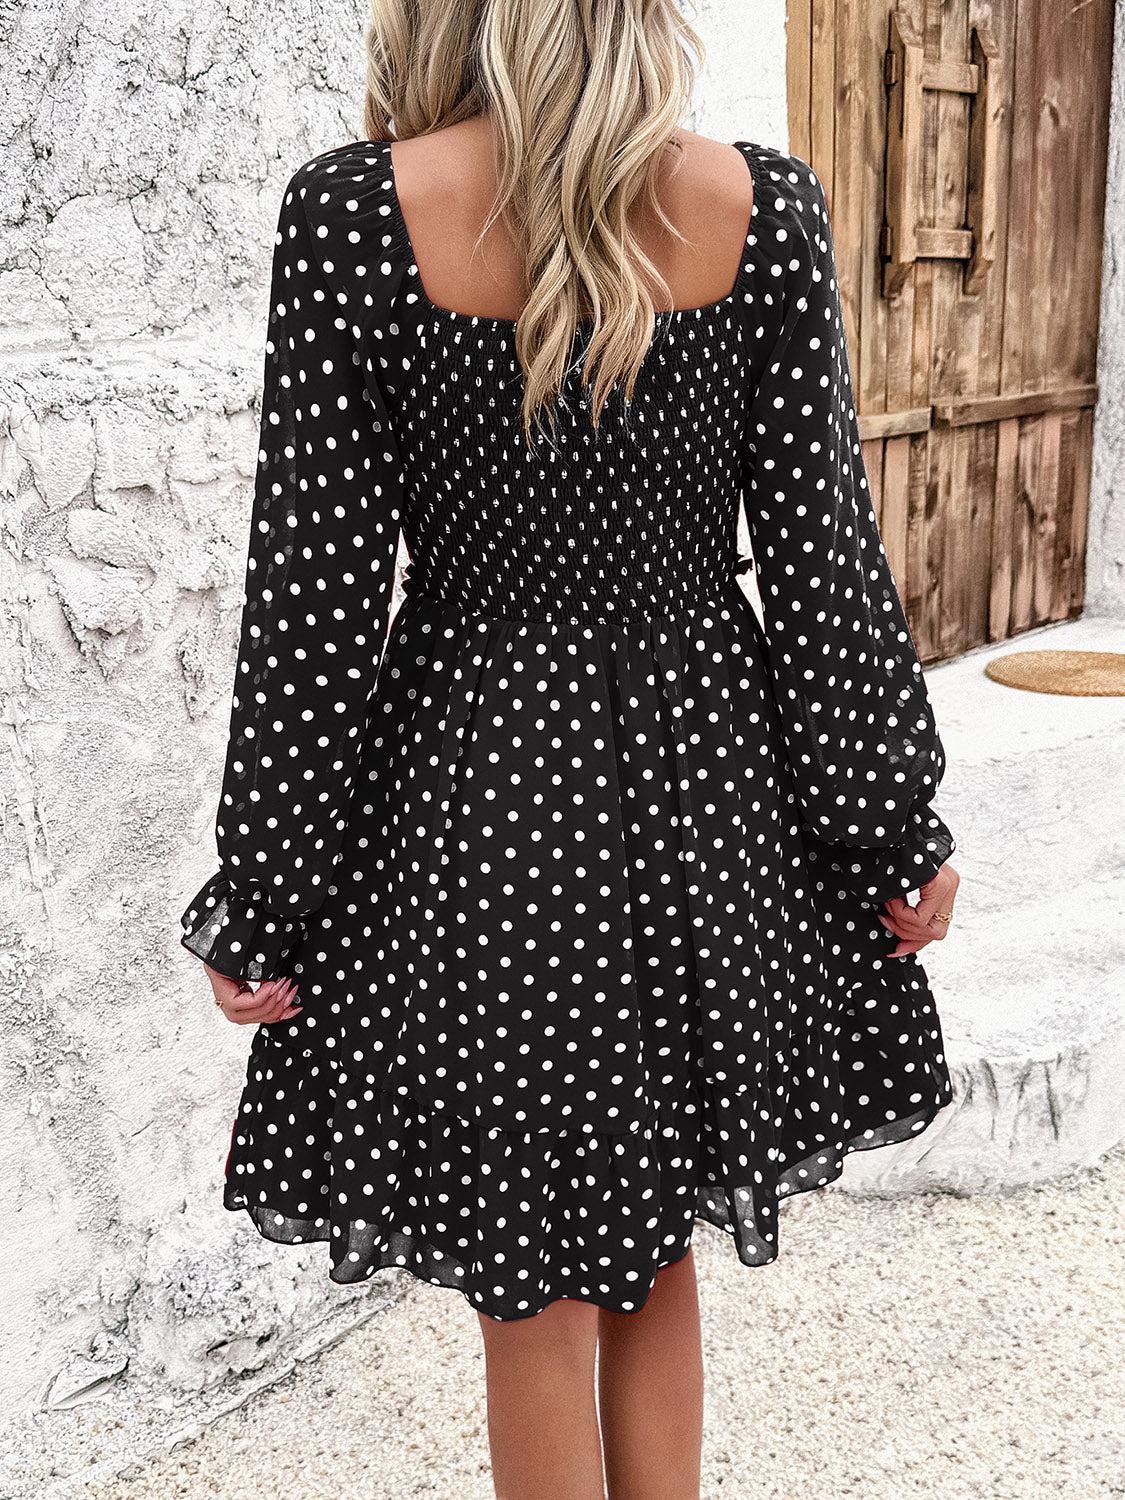 a woman wearing a black and white polka dot dress